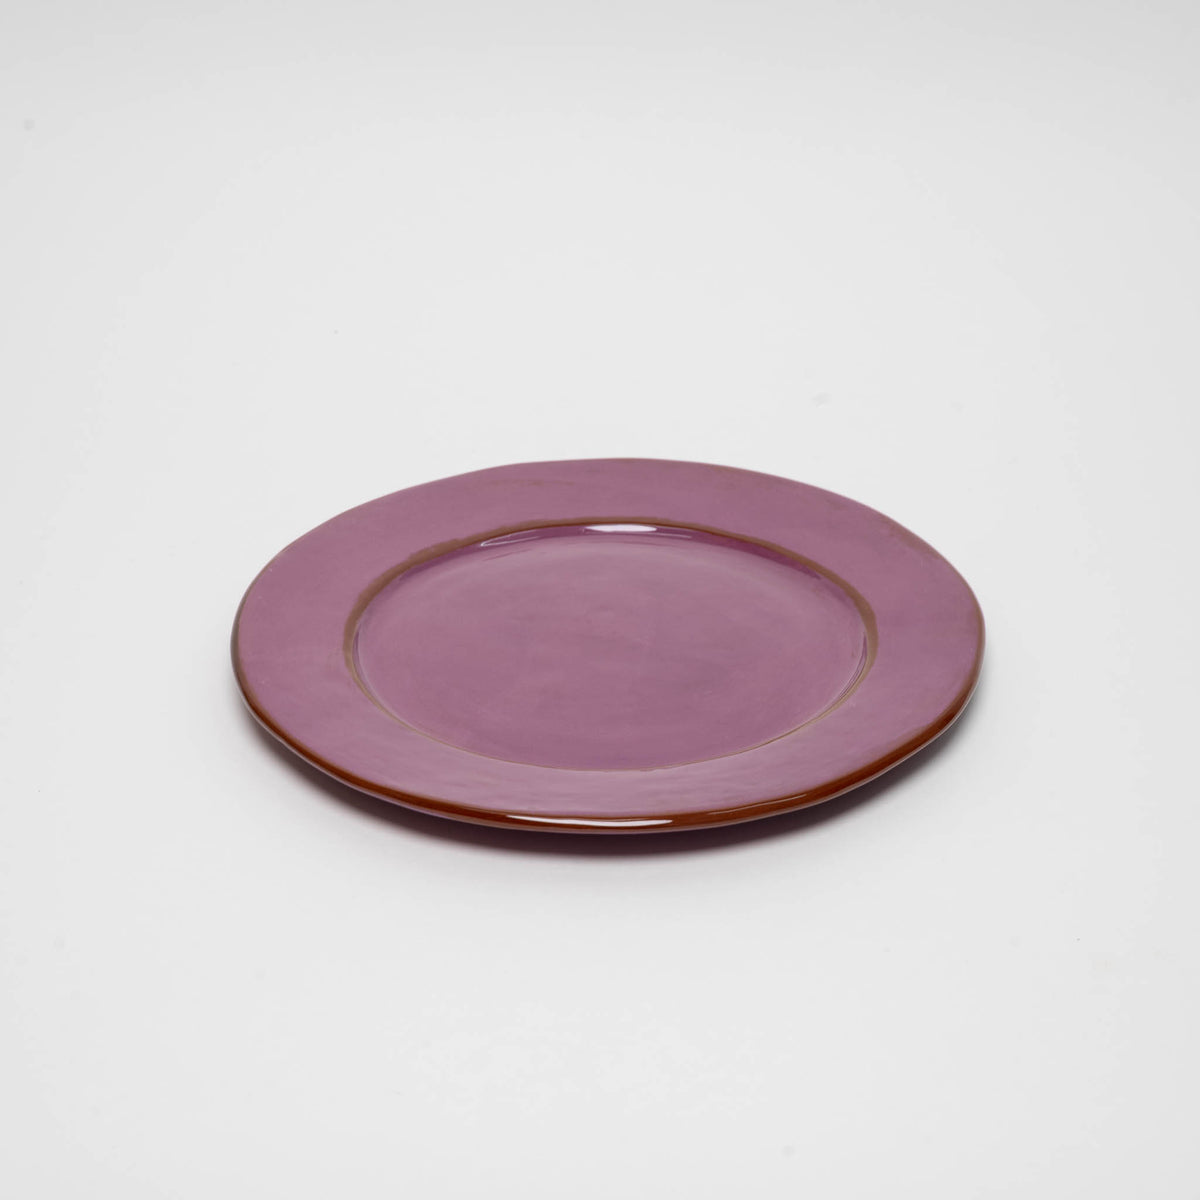 Round Serving Platter